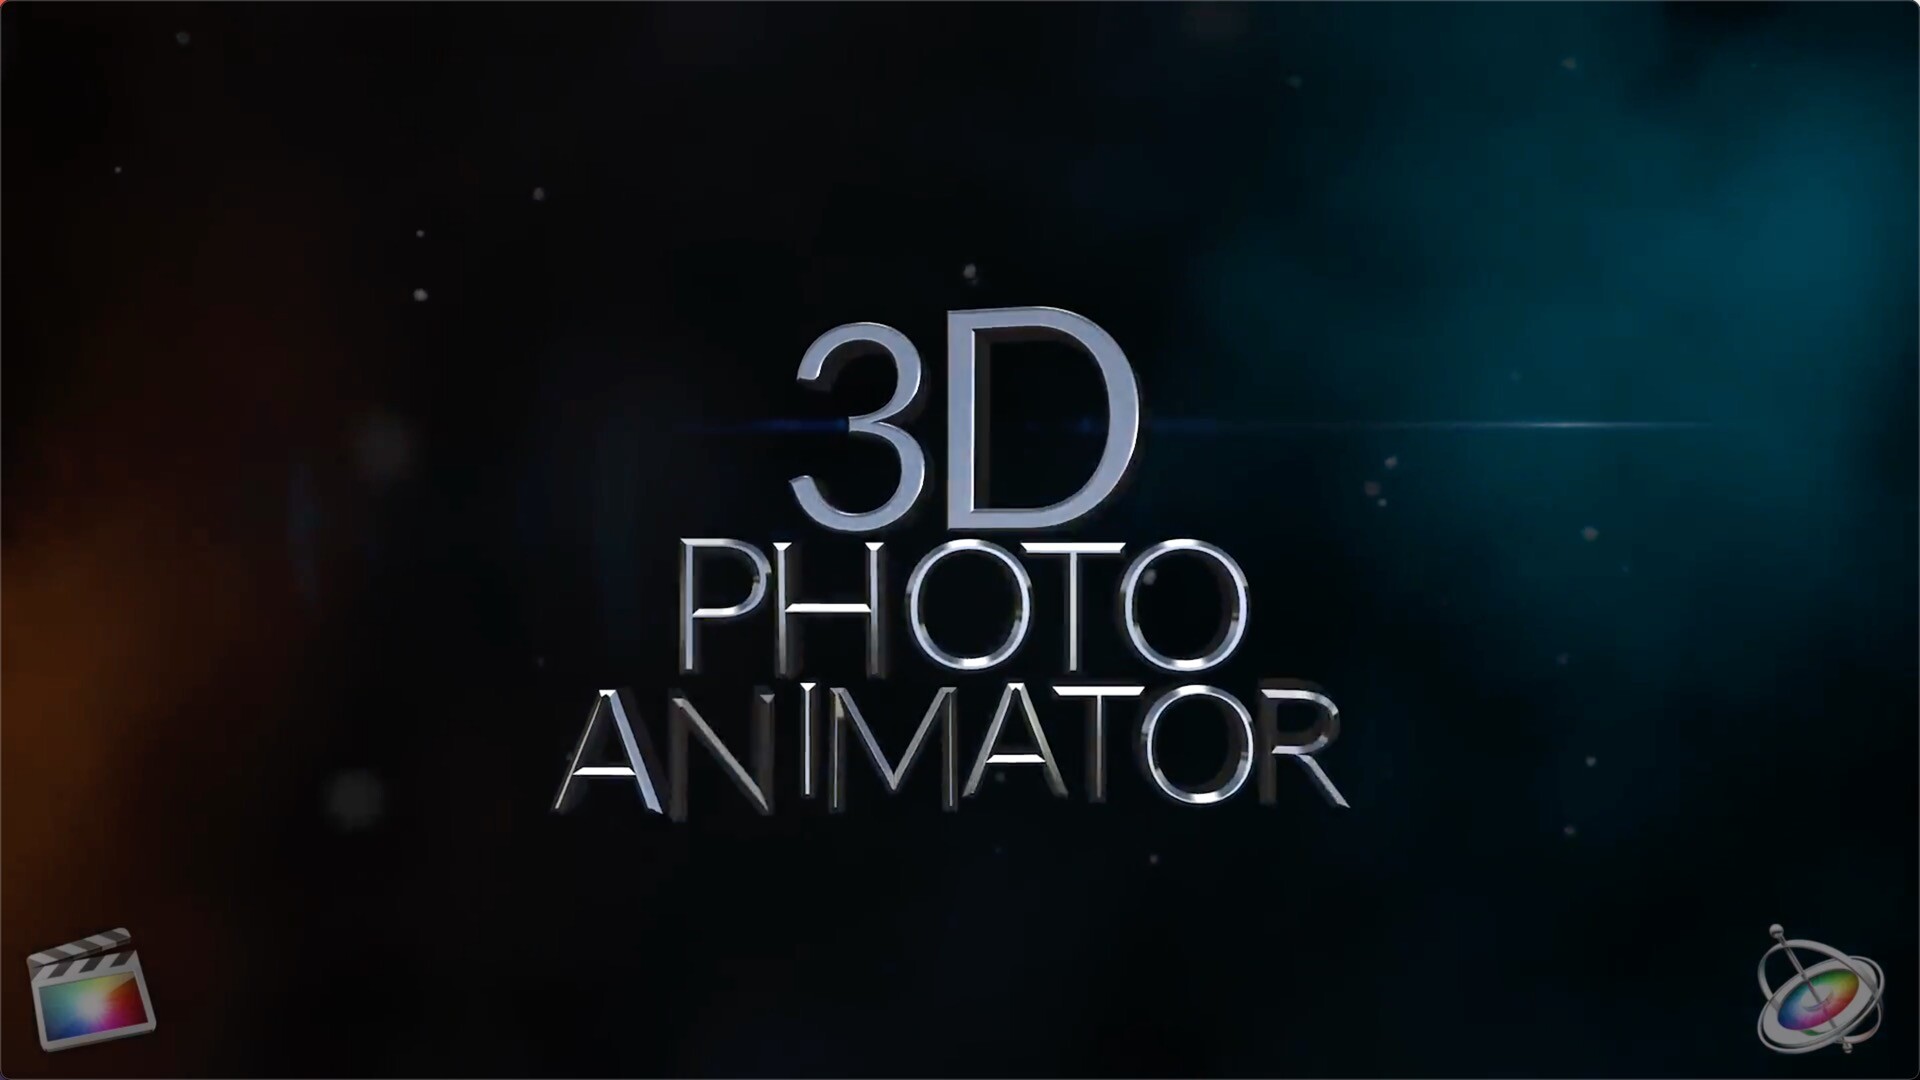 FCPX插件3D照片动画发生器3D Photo Animator 